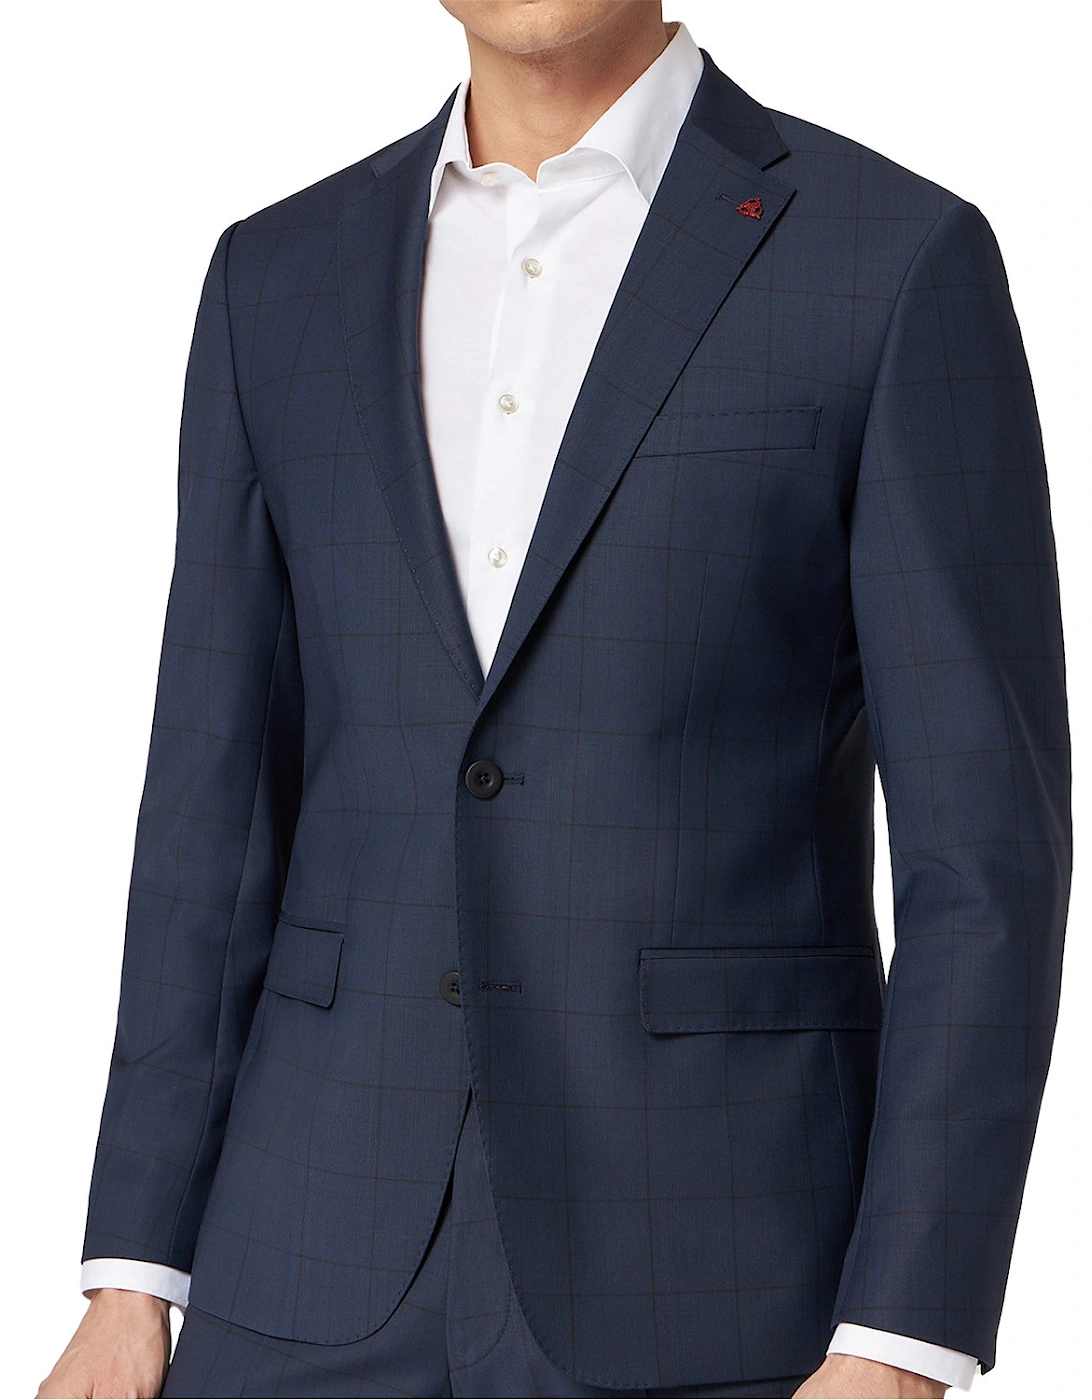 Mens Check Suit Jacket (Blue)